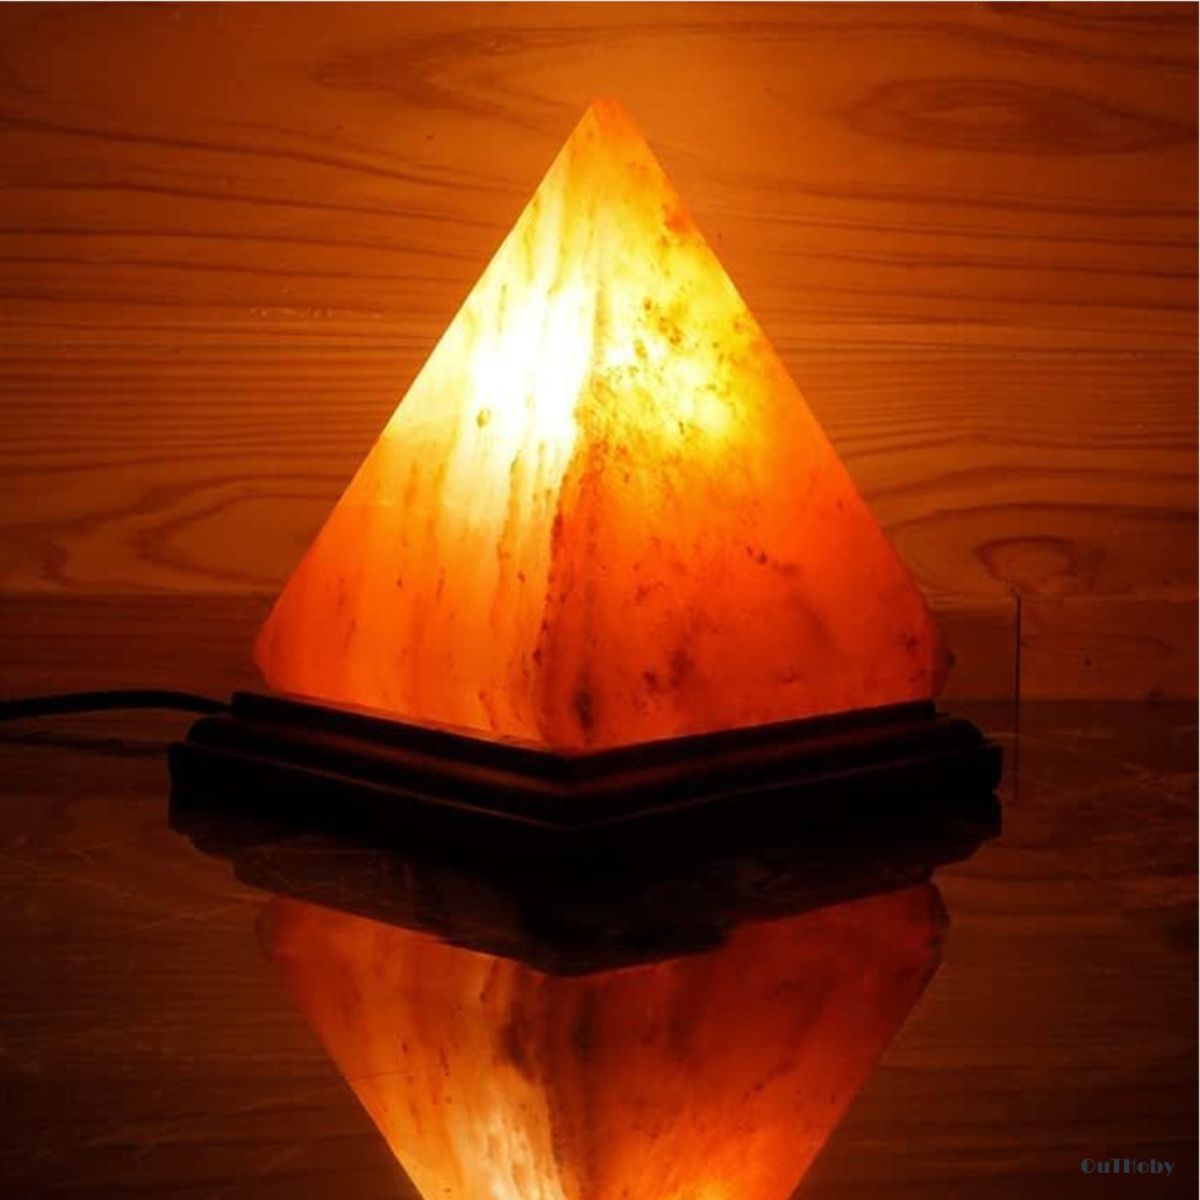 ピラミッド型 ヒマラヤ 岩塩ランプ ◎ 屋内ライト 間接照明 おしゃれ 神秘的 ◎ リビング ダイニング 寝室 キッチン インテリア プレゼント 